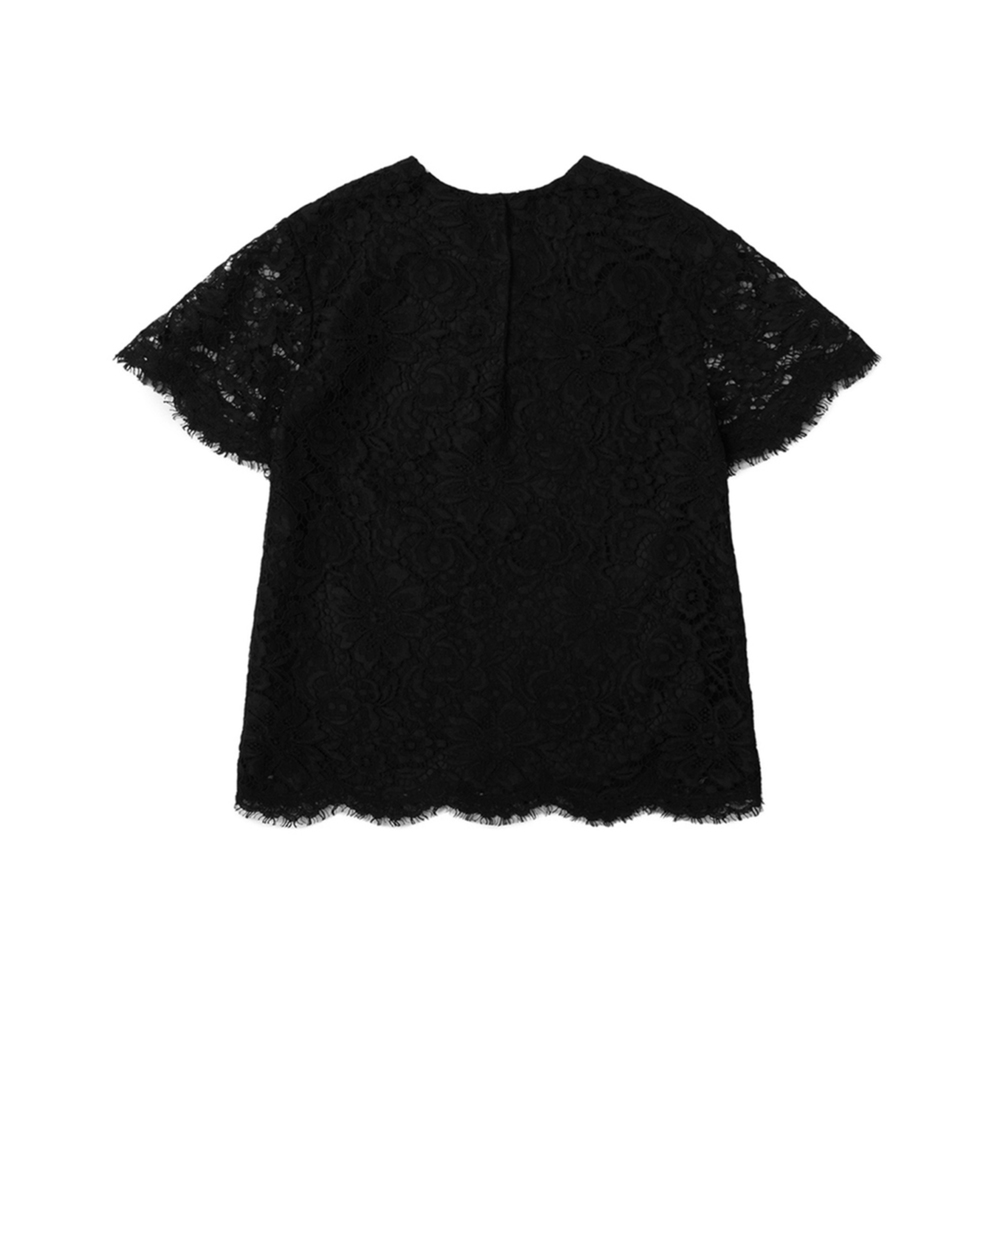 Детская блуза Dolce&Gabbana Kids L53S67-HLMVQ-S, черный цвет • Купить в интернет-магазине Kameron